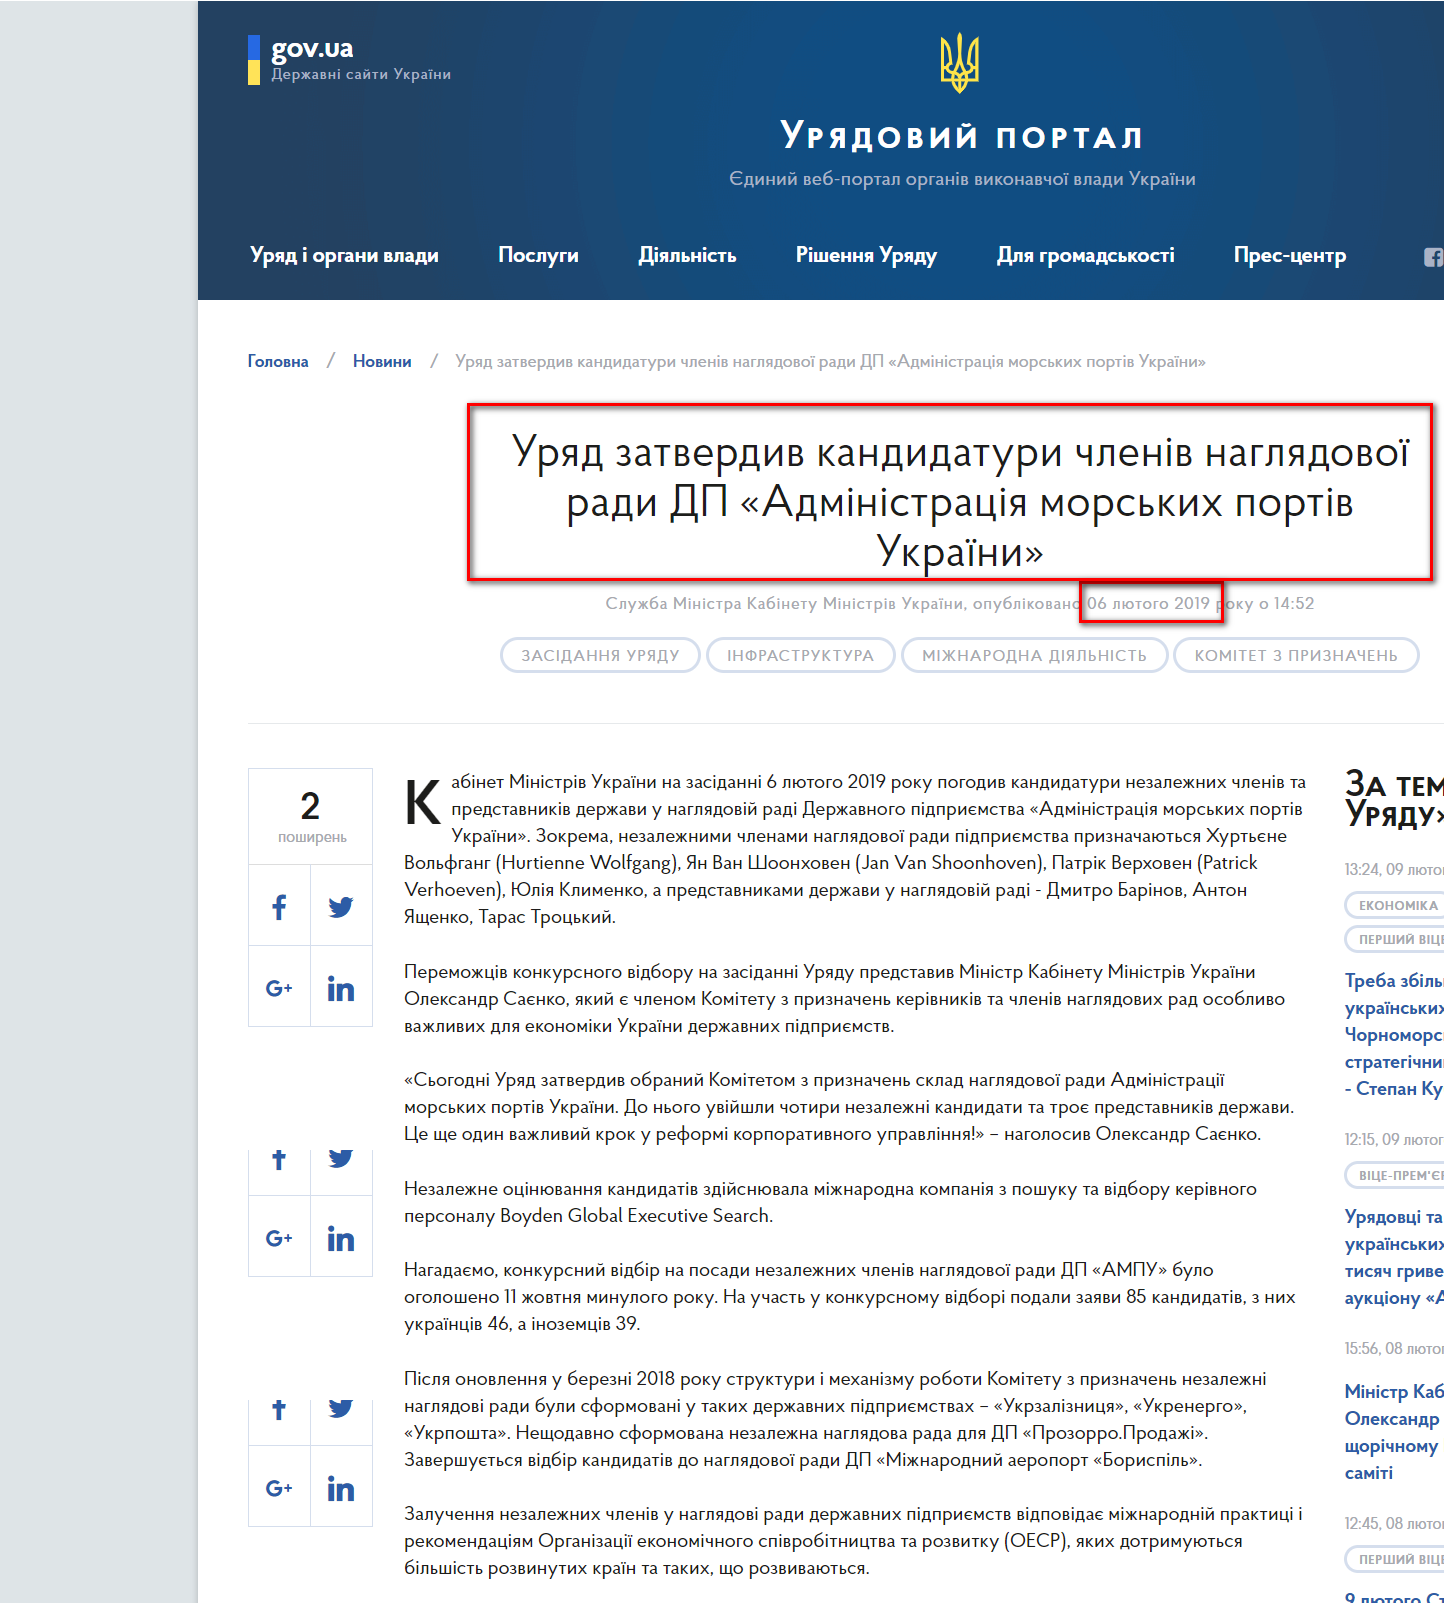 https://www.kmu.gov.ua/ua/news/uryad-zatverdiv-kandidaturi-chleniv-naglyadovoyi-radi-dp-administraciya-morskih-portiv-ukrayini